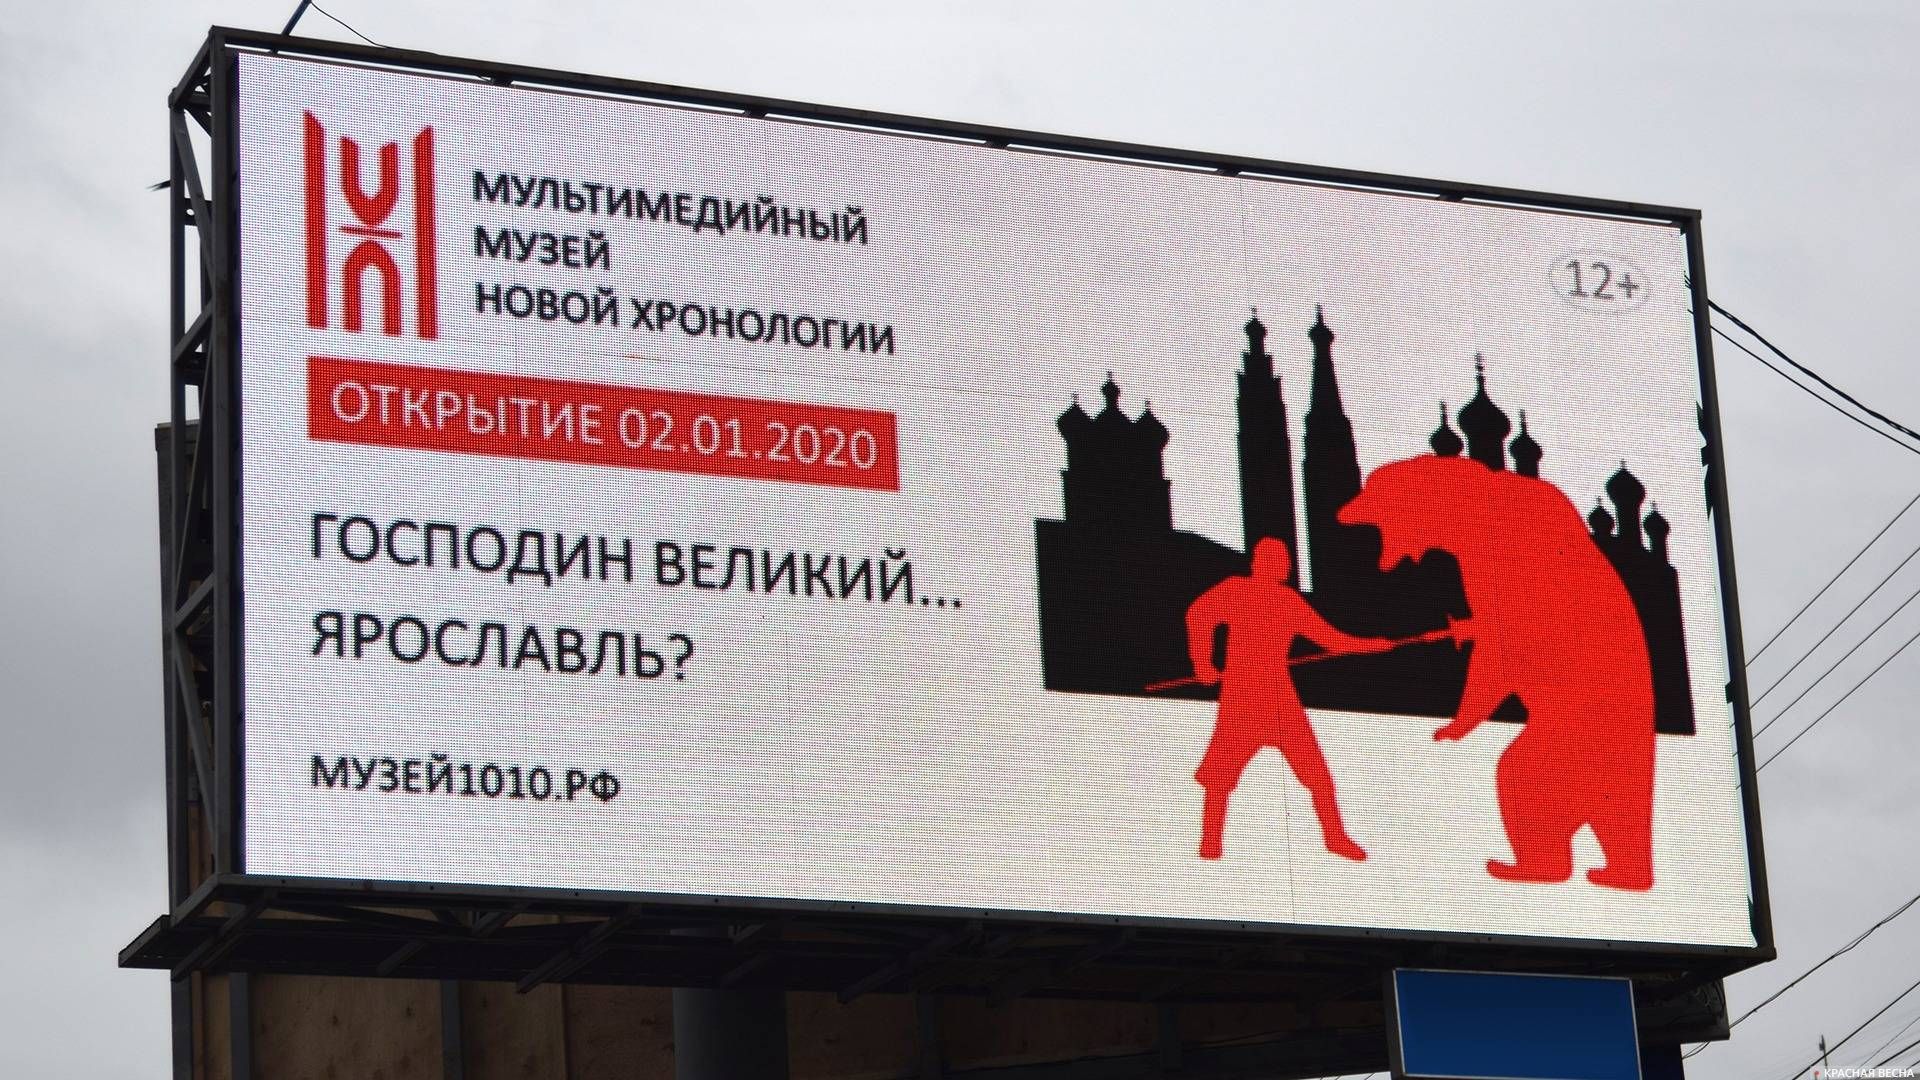 Реклама музея «Новой хронологии» в Ярославле